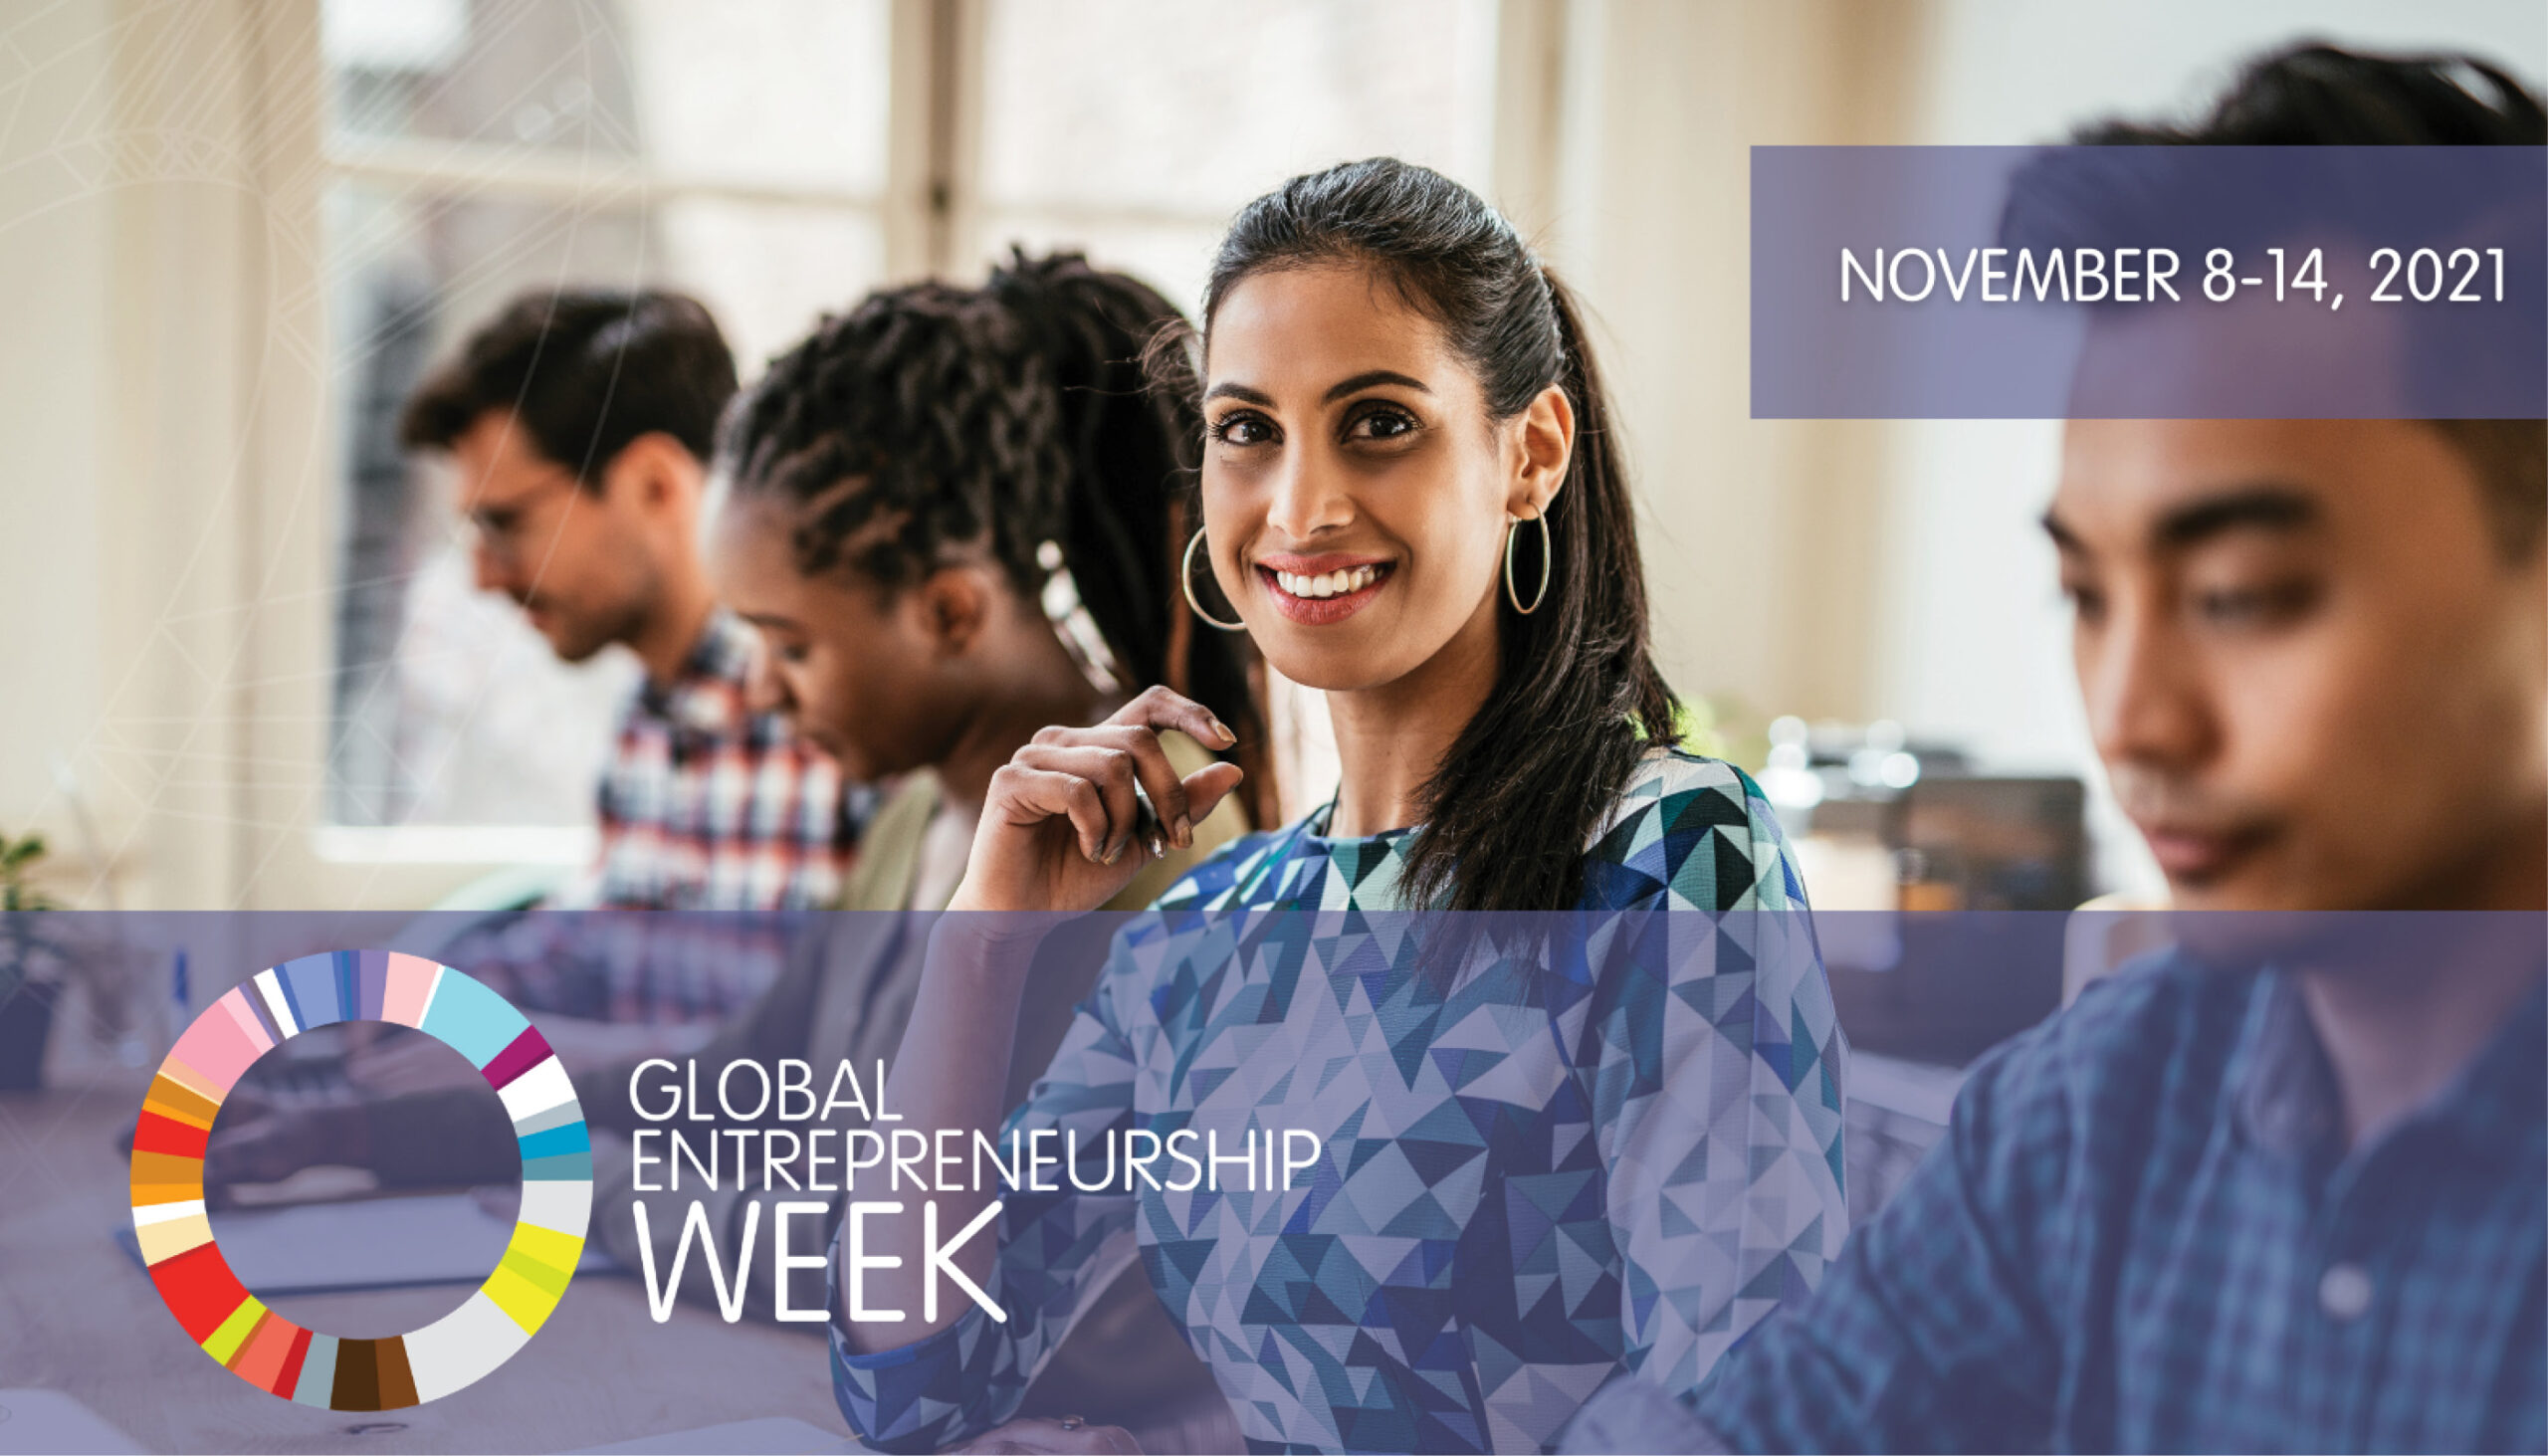 Global Entrepreneurship Week 2021 event banner